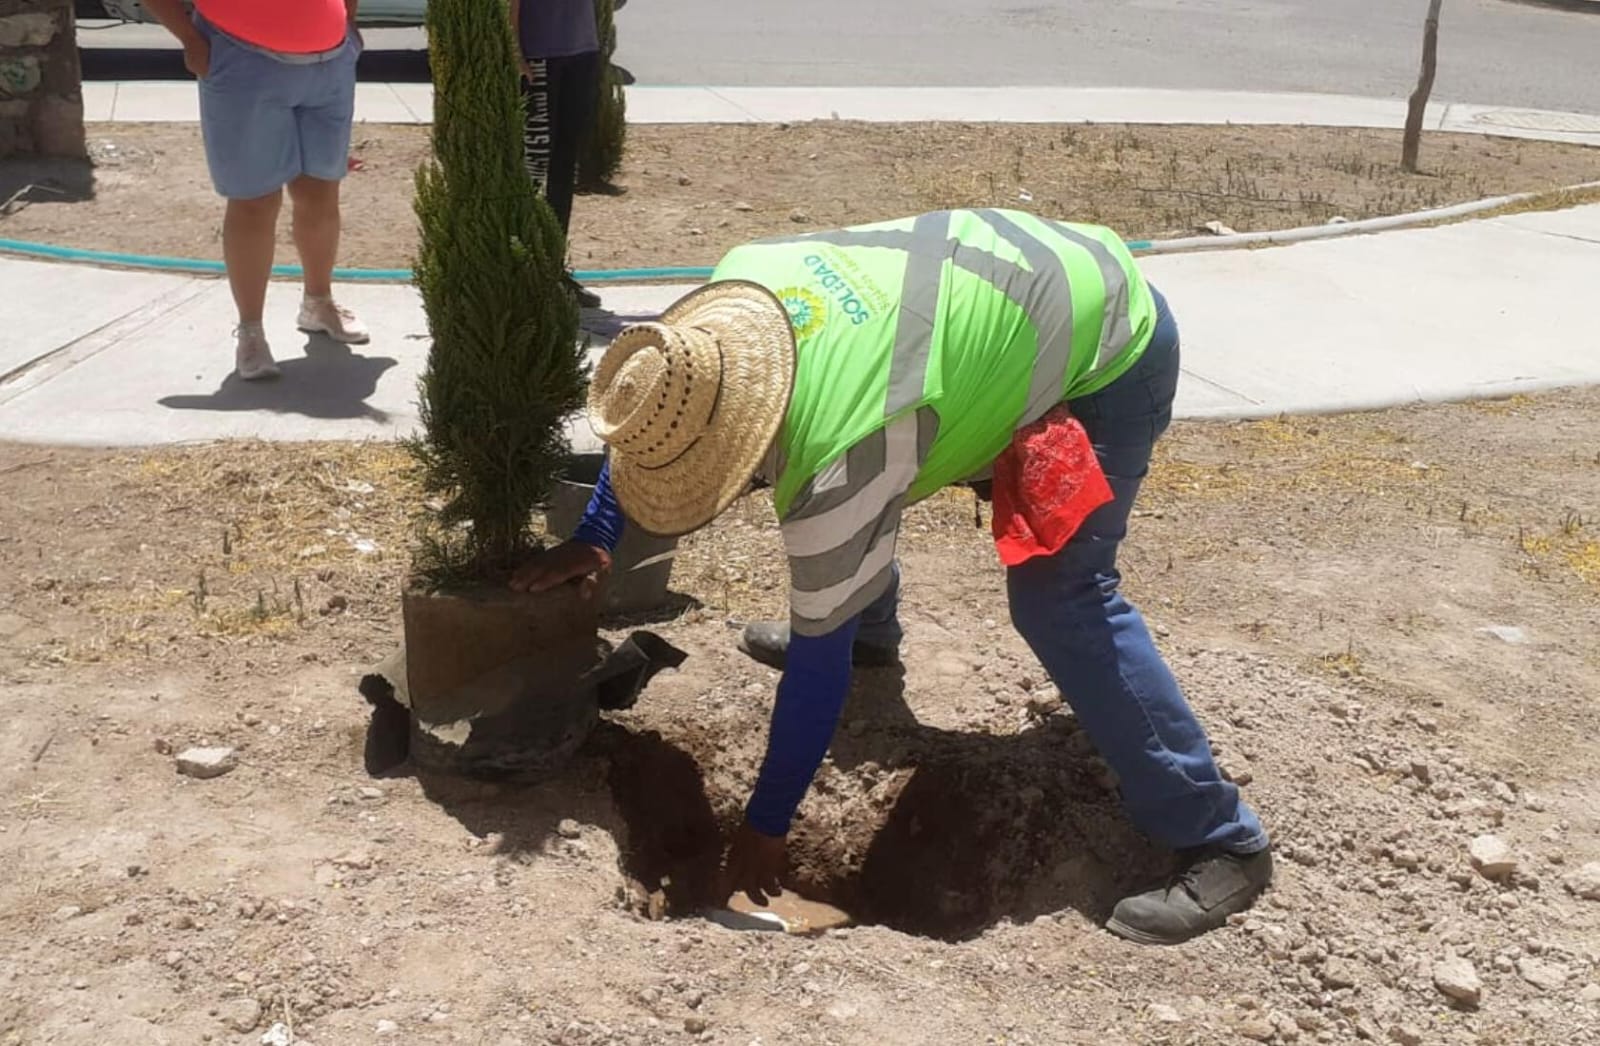 Suman más de 100 nuevos árboles plantados en Soledad de G. S., en últimas semanas